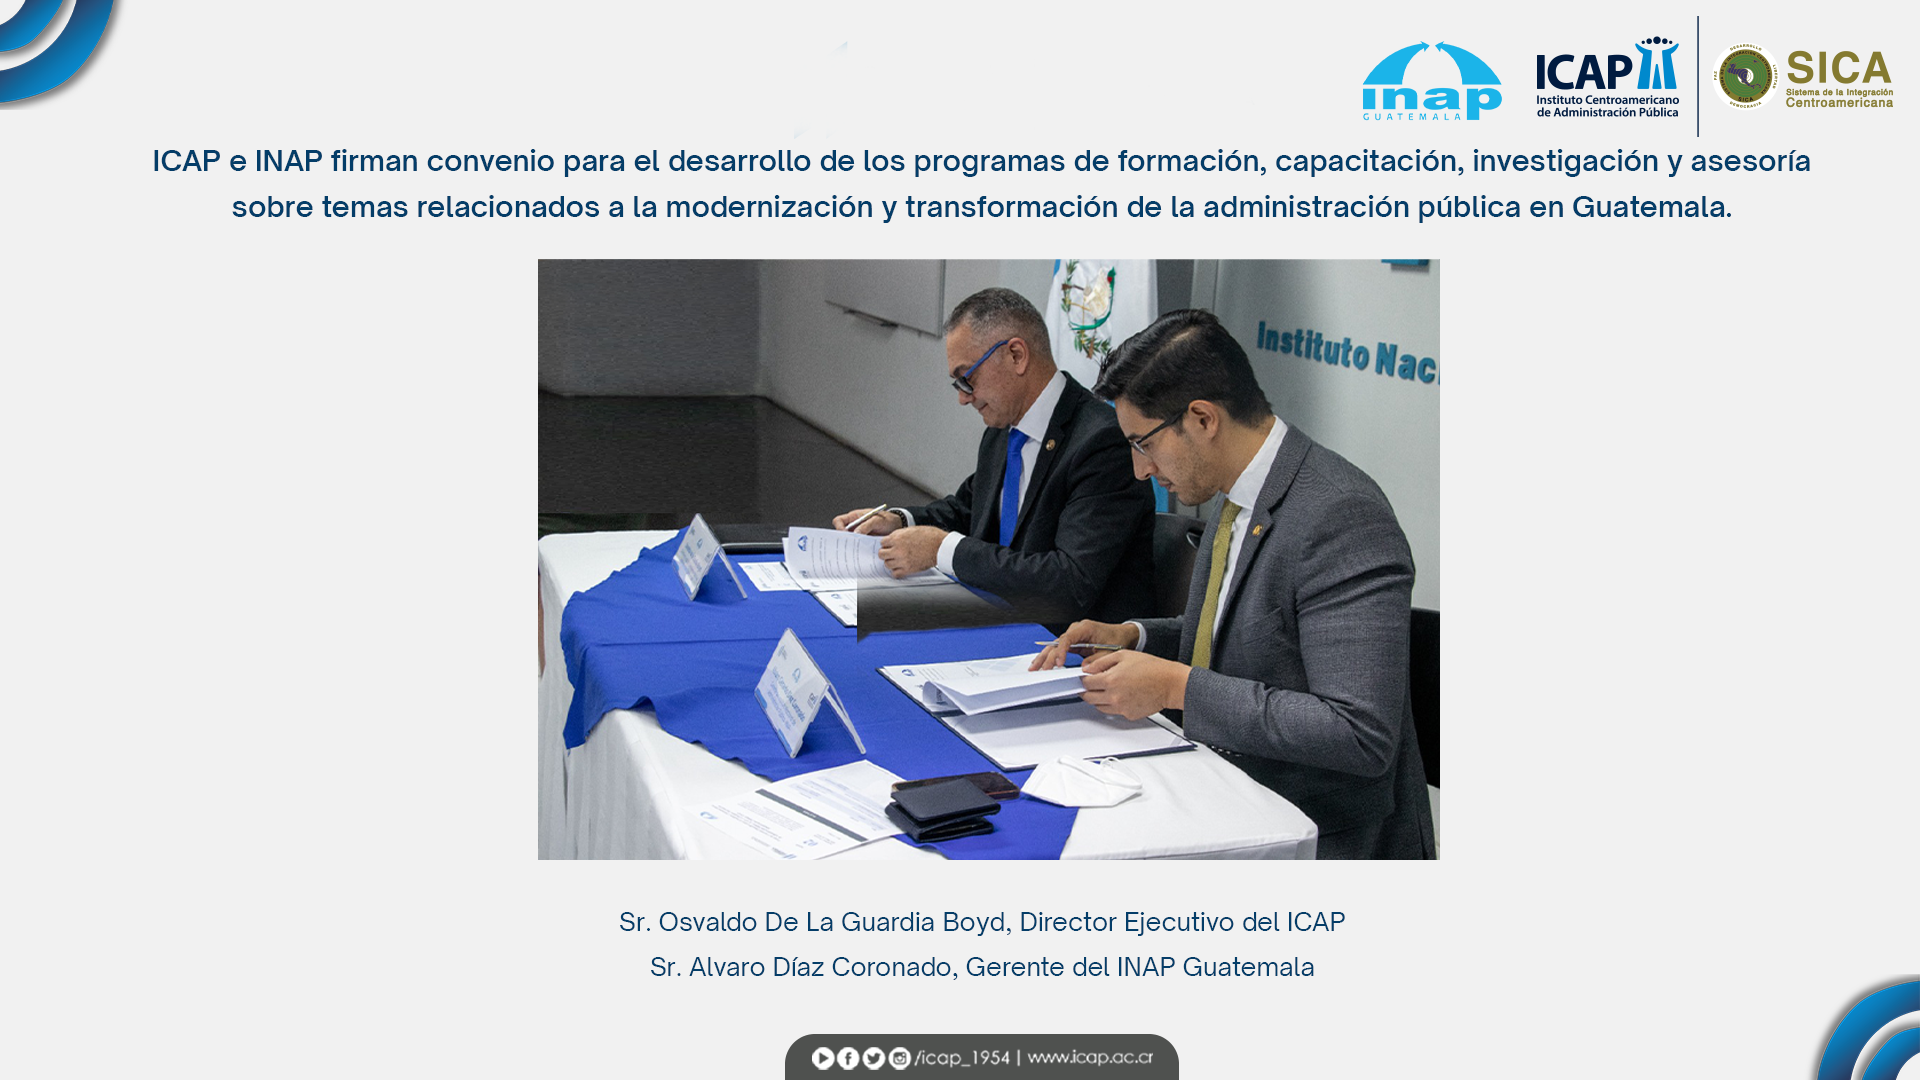 ICAP e INAP firman convenio para fortalecer la administración pública en Guatemala